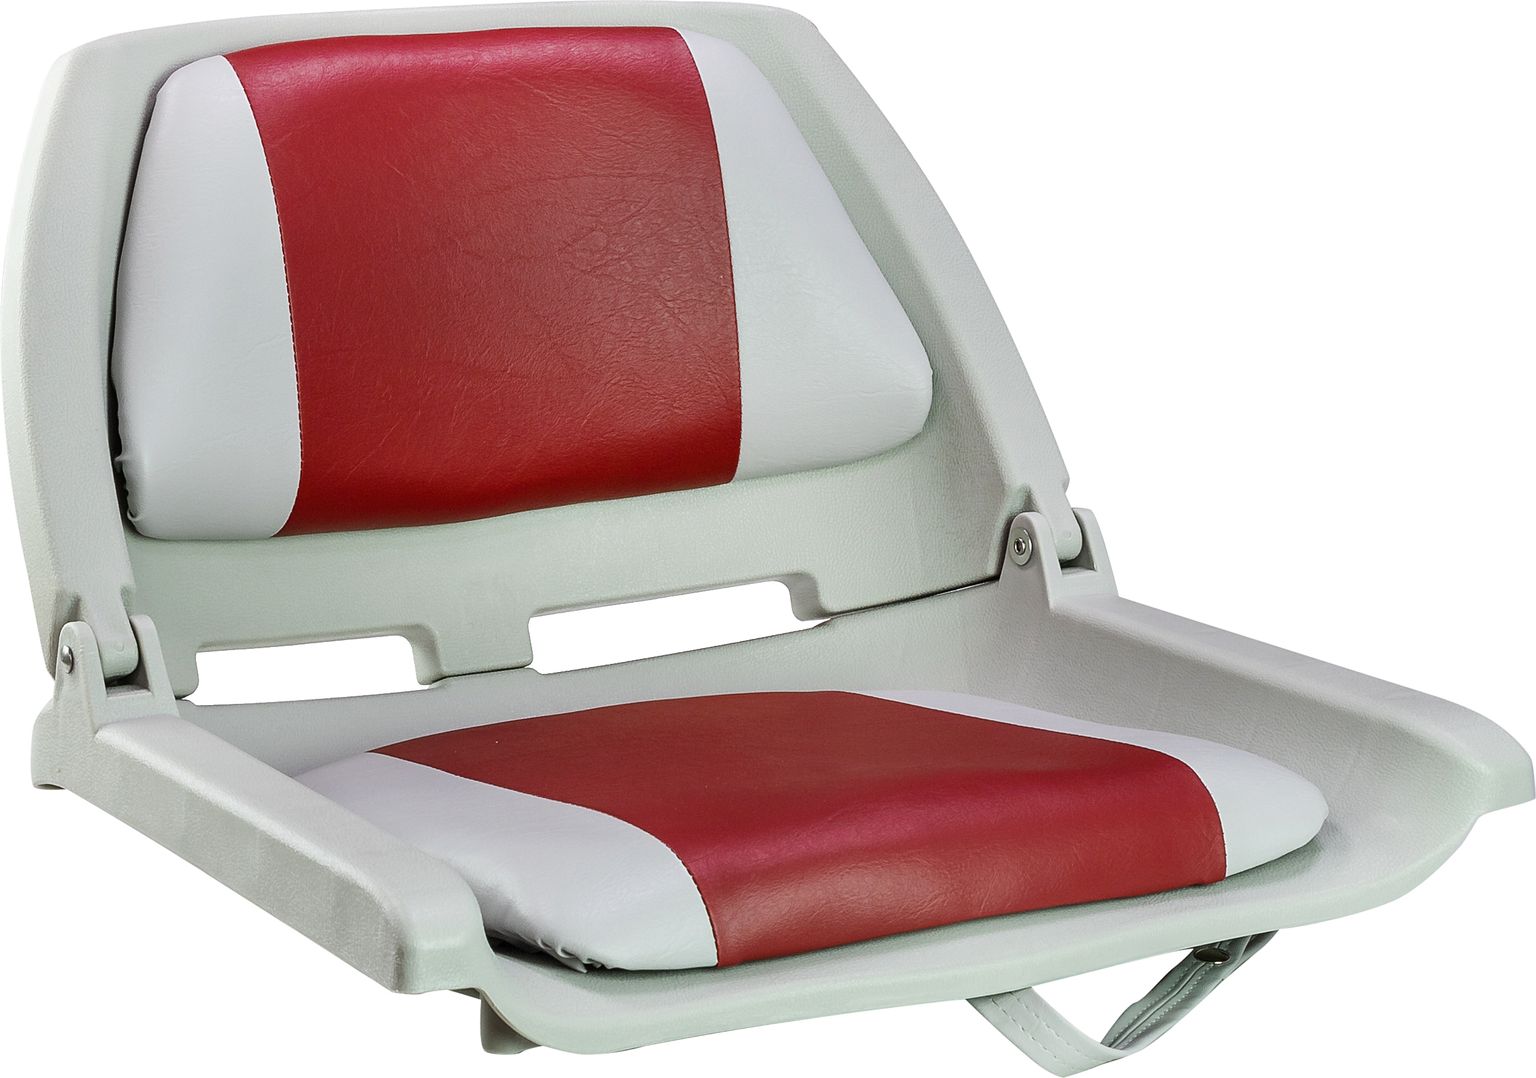 Кресло мягкое складное, обивка винил, цвет серый/красный, Marine Rocket 75109GR-MR кресло мягкое складное камуфляж осень marine rocket 75109max5 mr